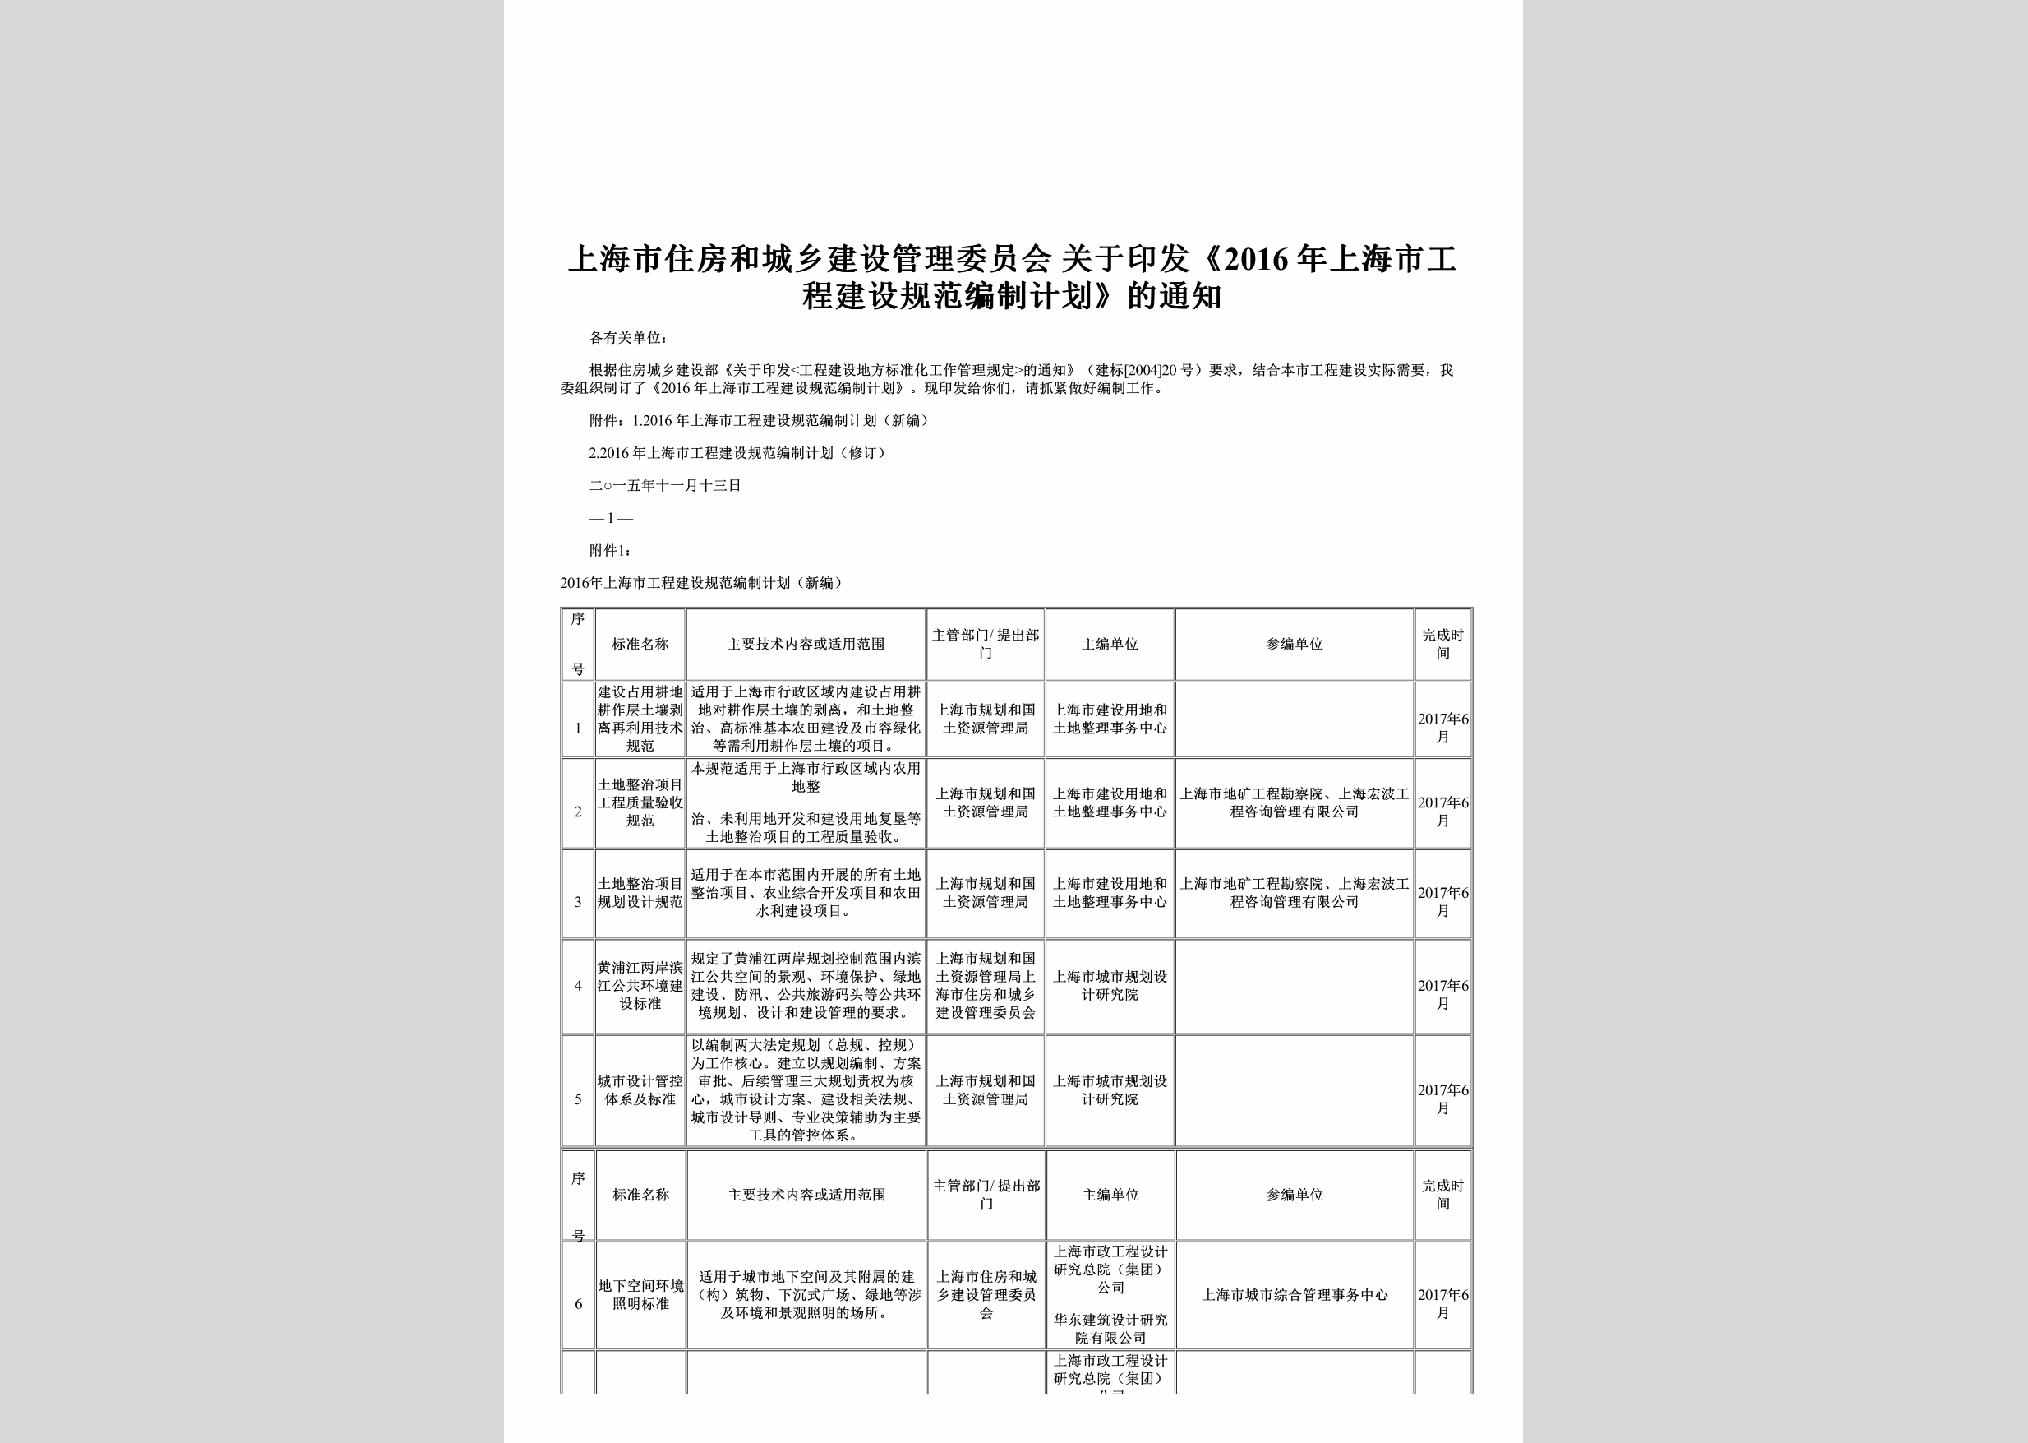 SH-GCJSJHTZ-2015：关于印发《2016年上海市工程建设规范编制计划》的通知